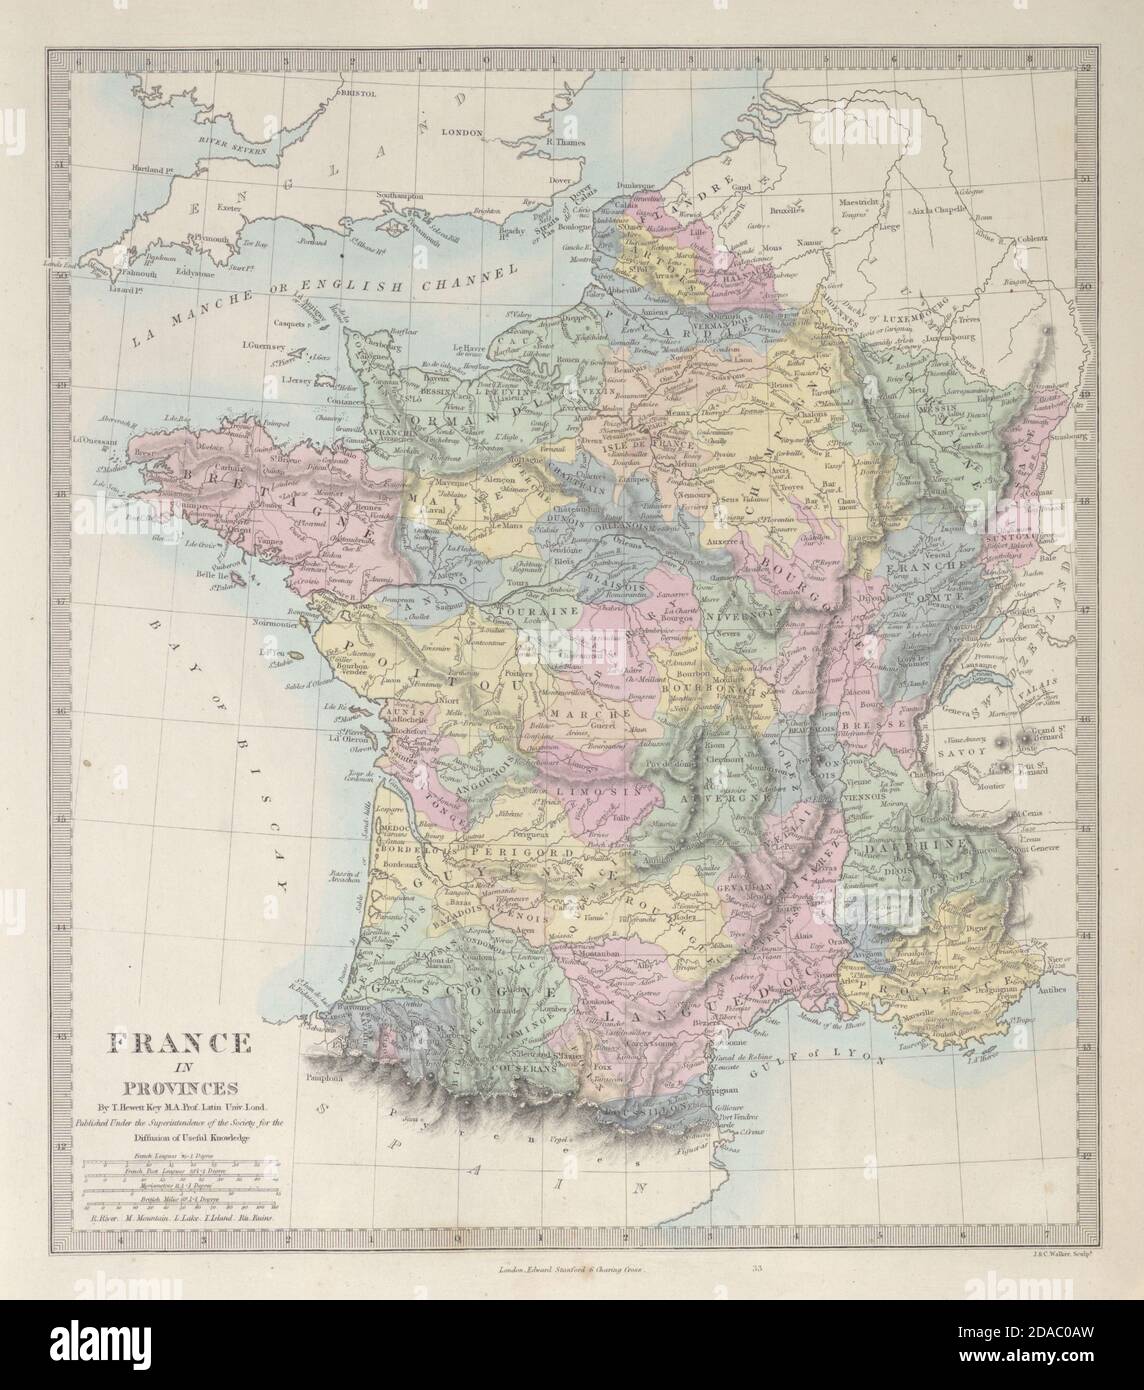 FRANCE montrant DES PROVINCES pré-révolutionnaires. Couleur originale de la main. Carte SDUK 1857 Banque D'Images